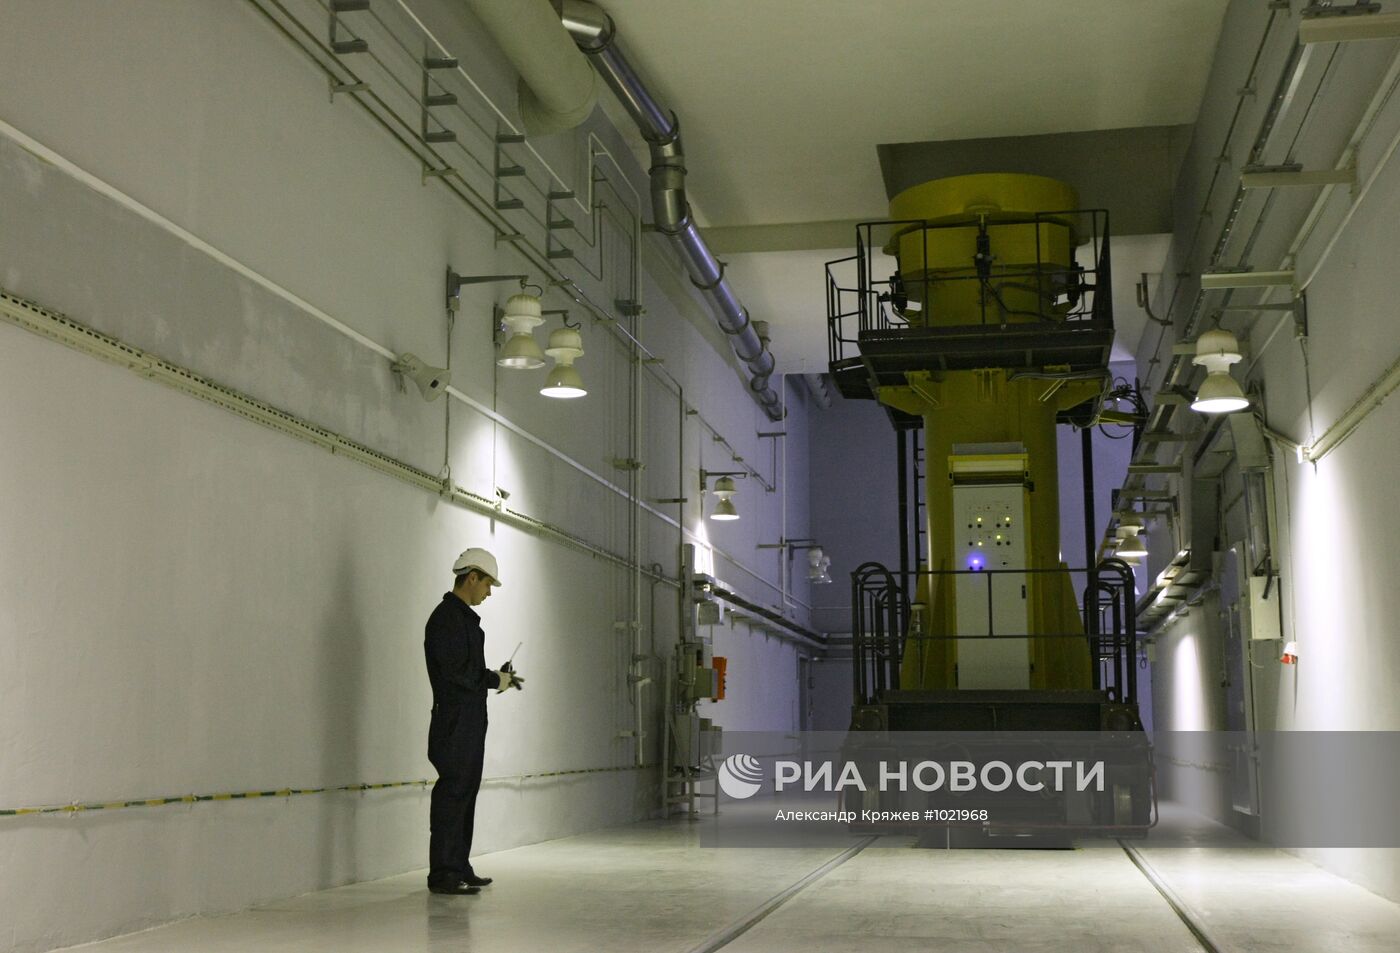 Хранилище отработанного ядерного топлива в Железногорске